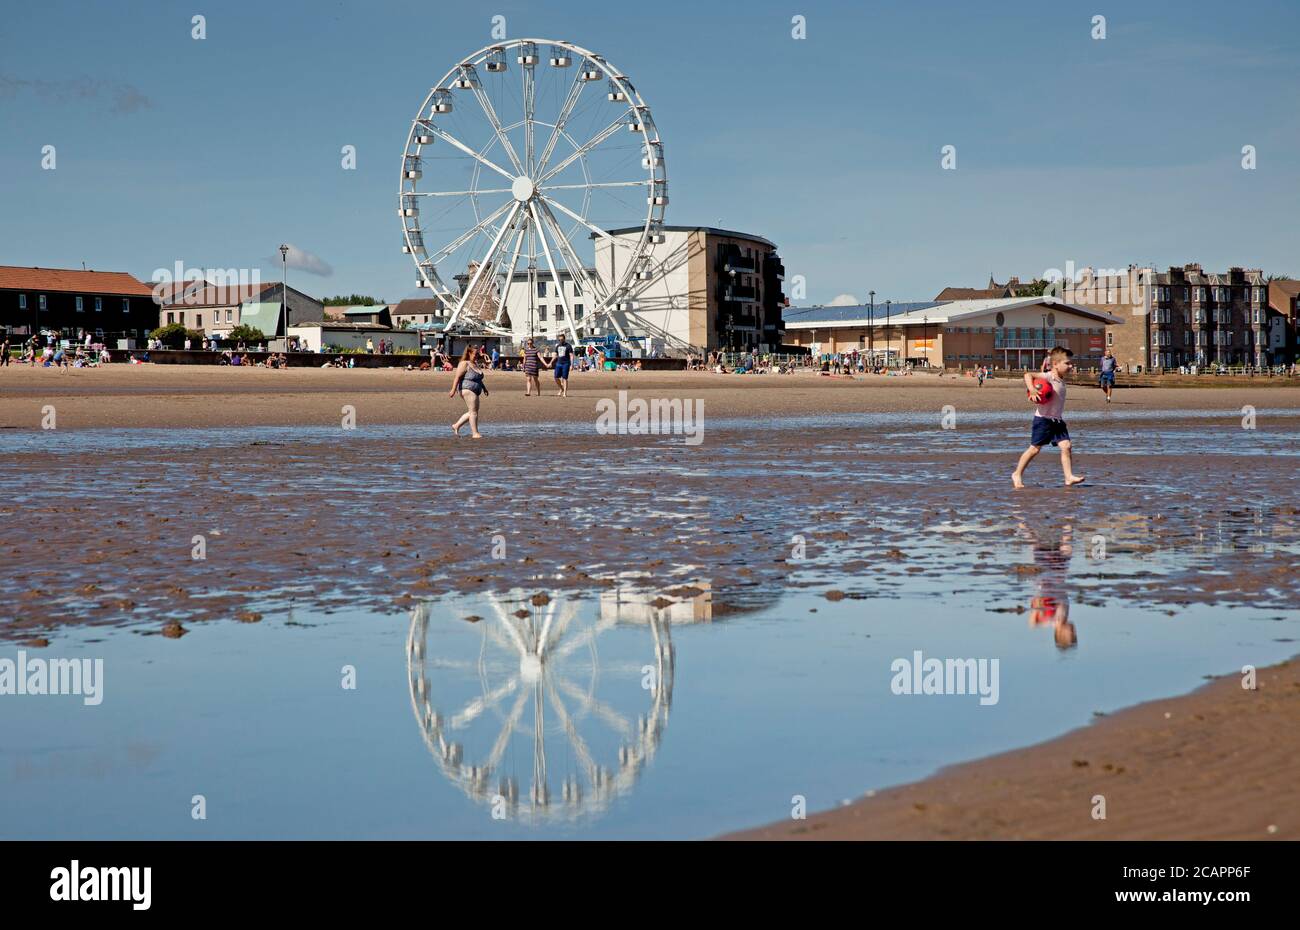 Portobello Beach, Ferris Wheel, Edinburgh, Schottland, Großbritannien. August 2020. Heiß und sonnig am Meer 17 Grad am Mittag brachten Familien heraus, um das Wetter und die Aktivität auf dem Firth of Forth zu genießen. Das Riesenrad ist eine neue Attraktion, von der jeder spricht Stockfoto